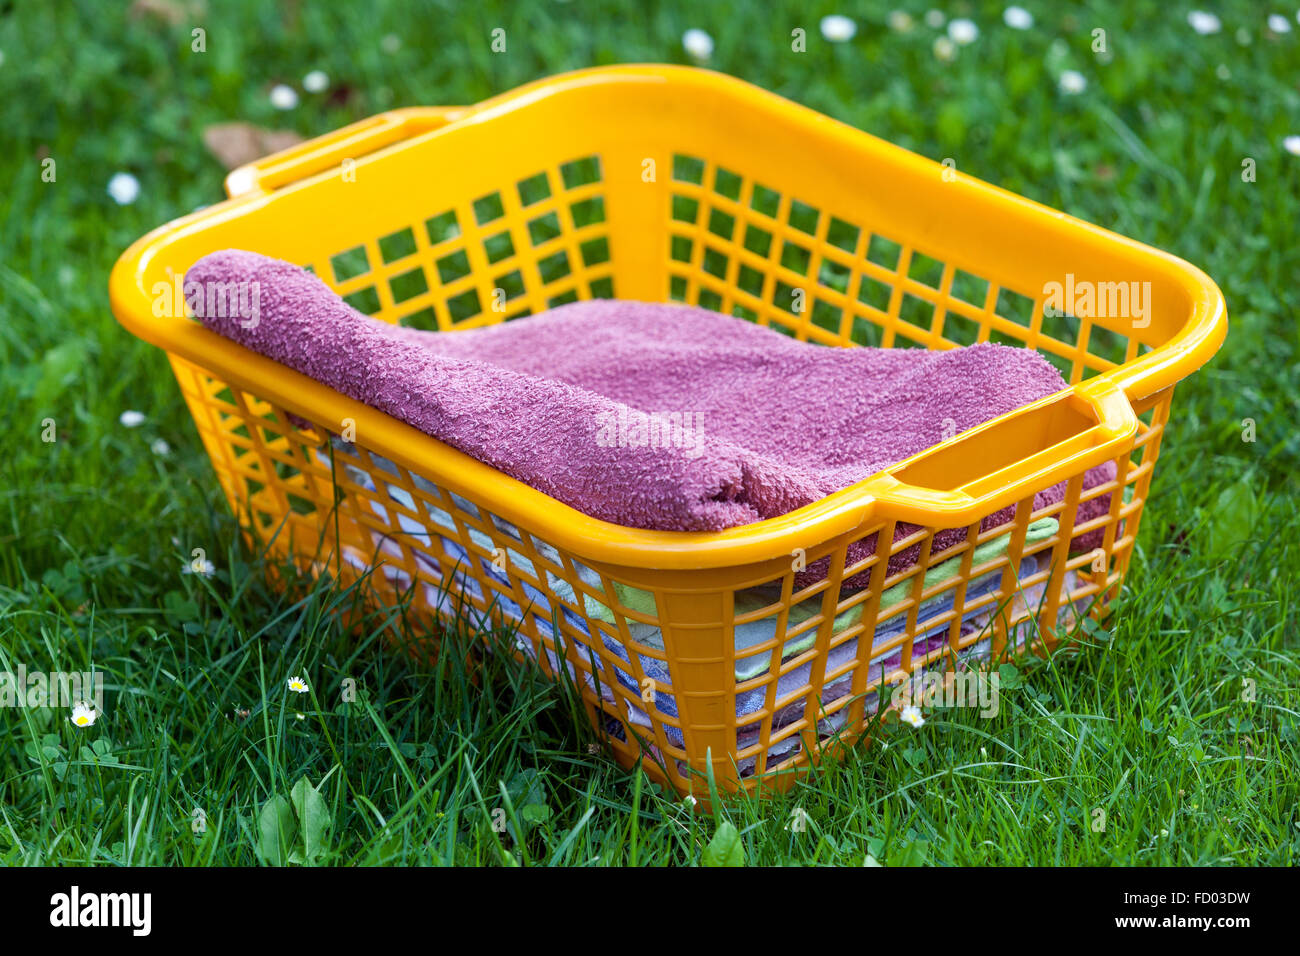 Buanderie fraîchement lavée dans un panier en plastique, couché sur l'herbe  dans le jardin Photo Stock - Alamy